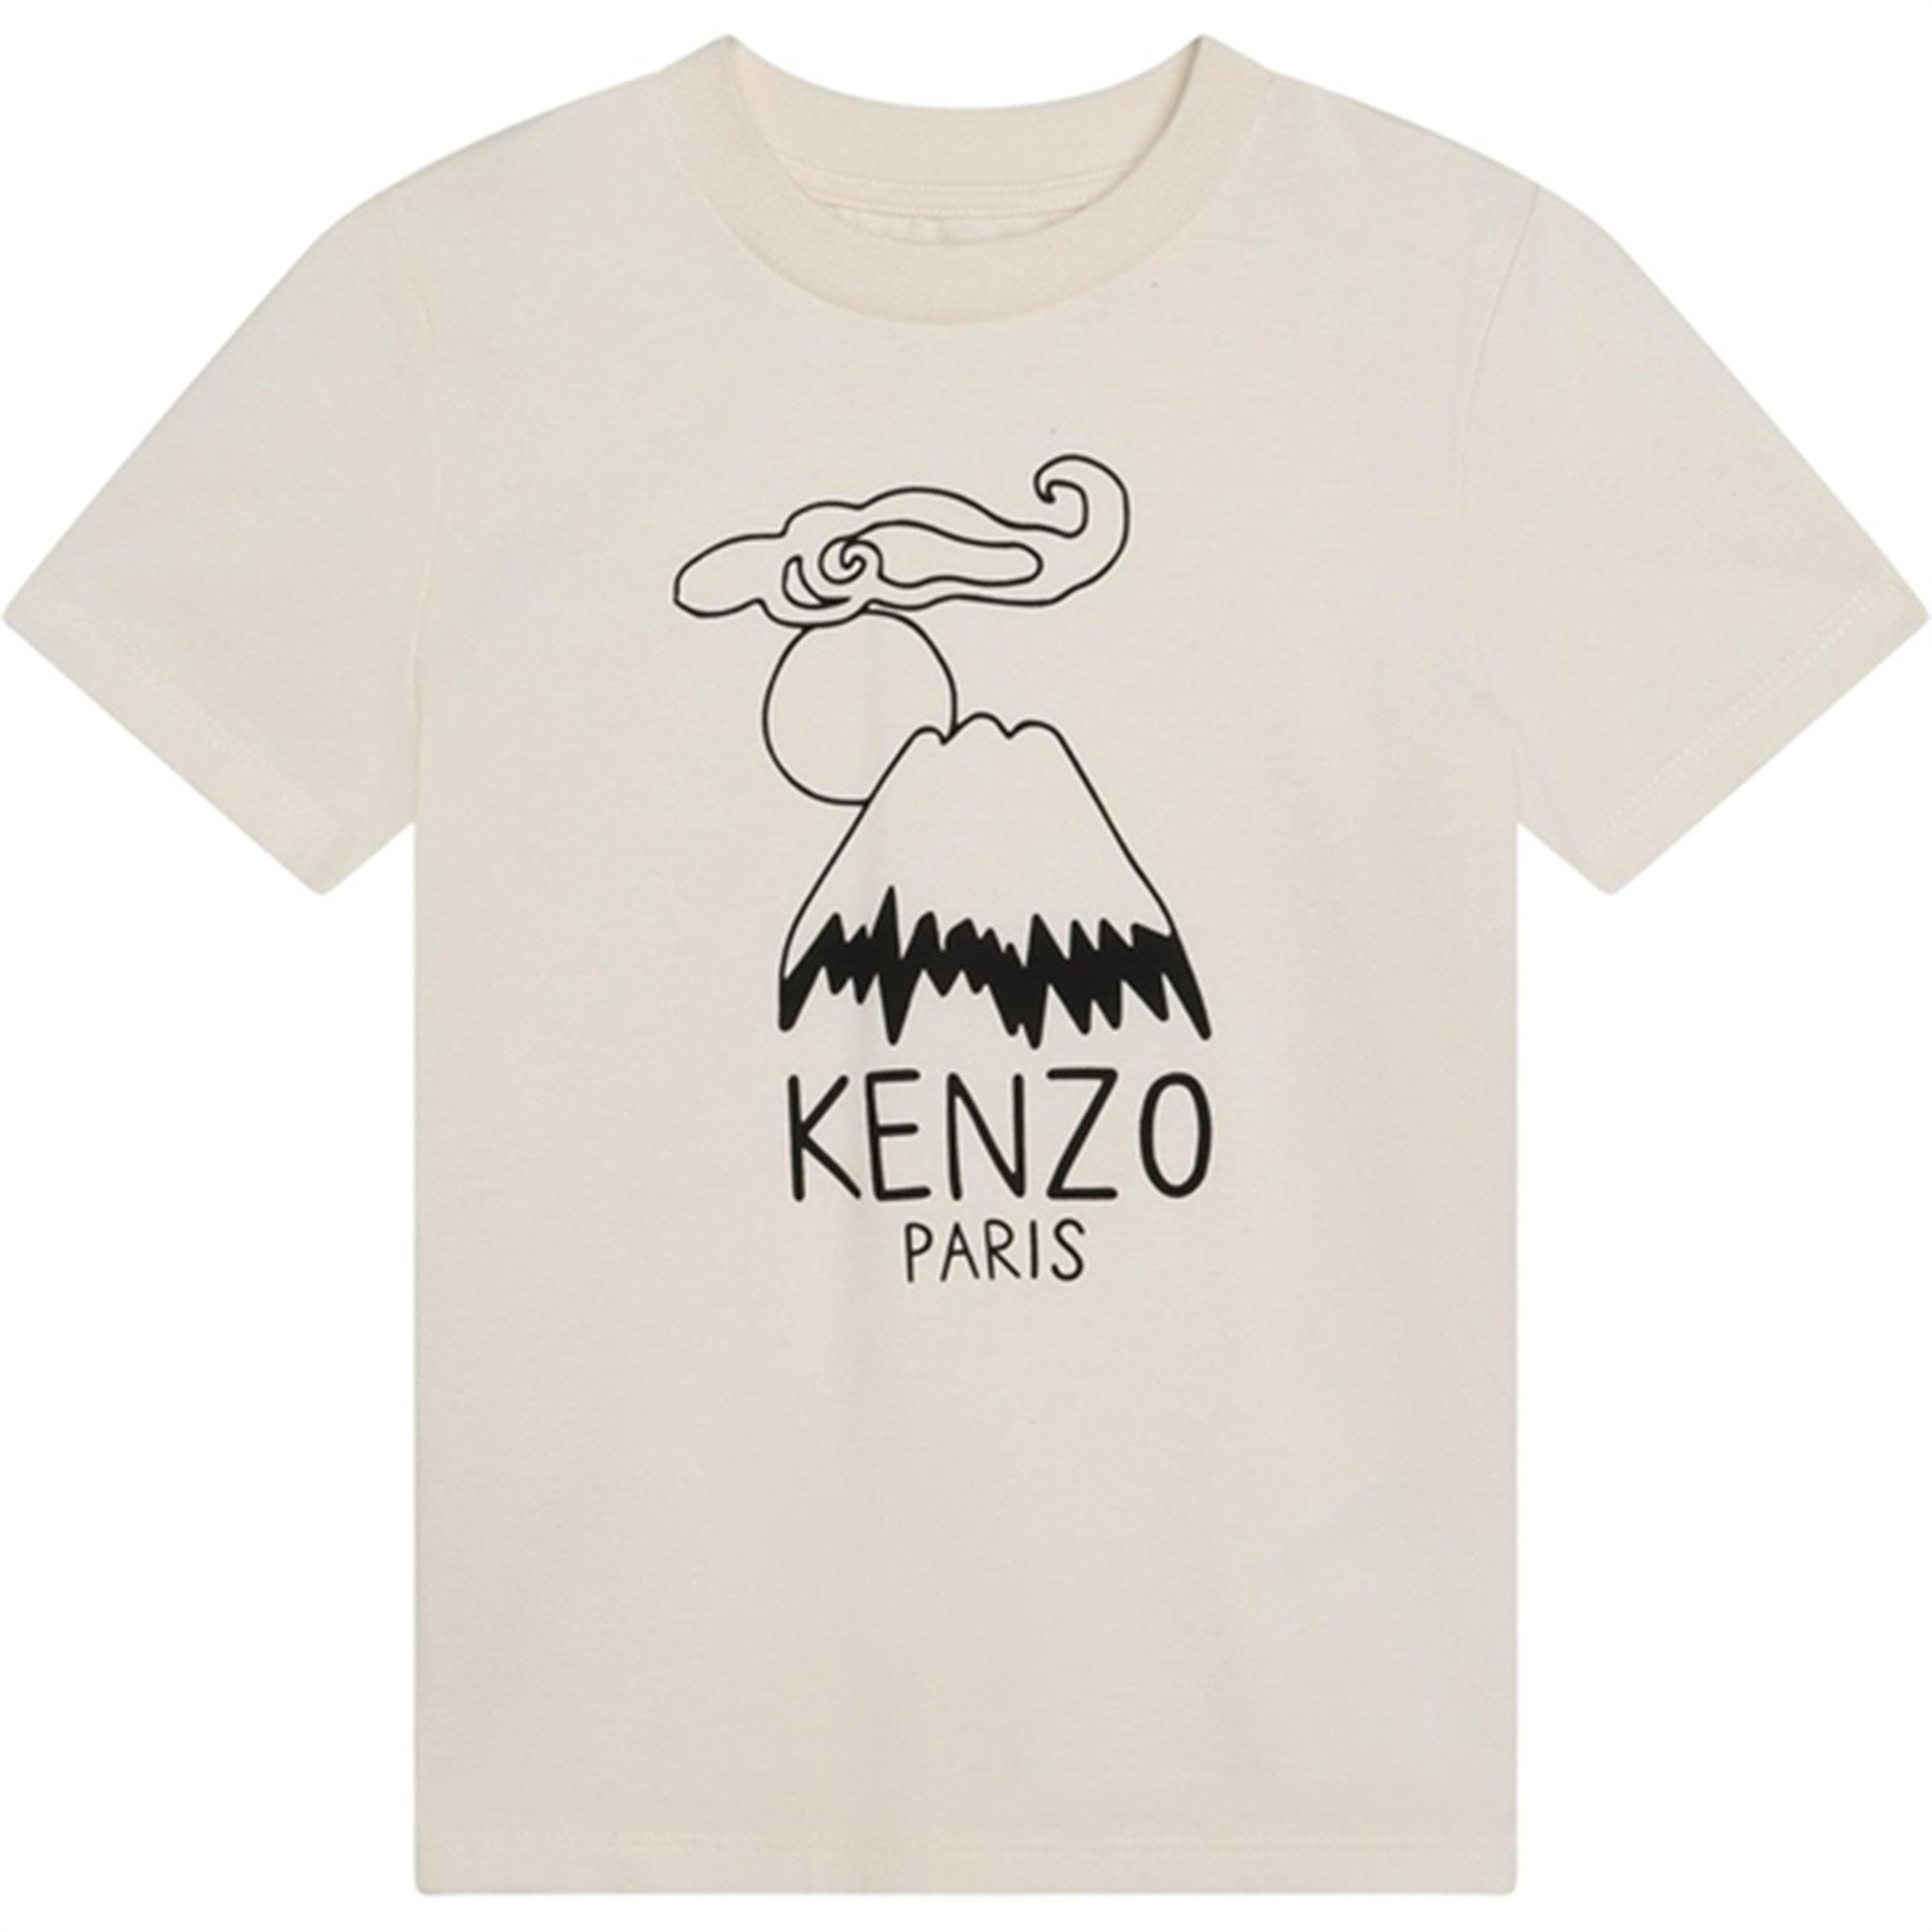 Kenzo T-shirt Cream